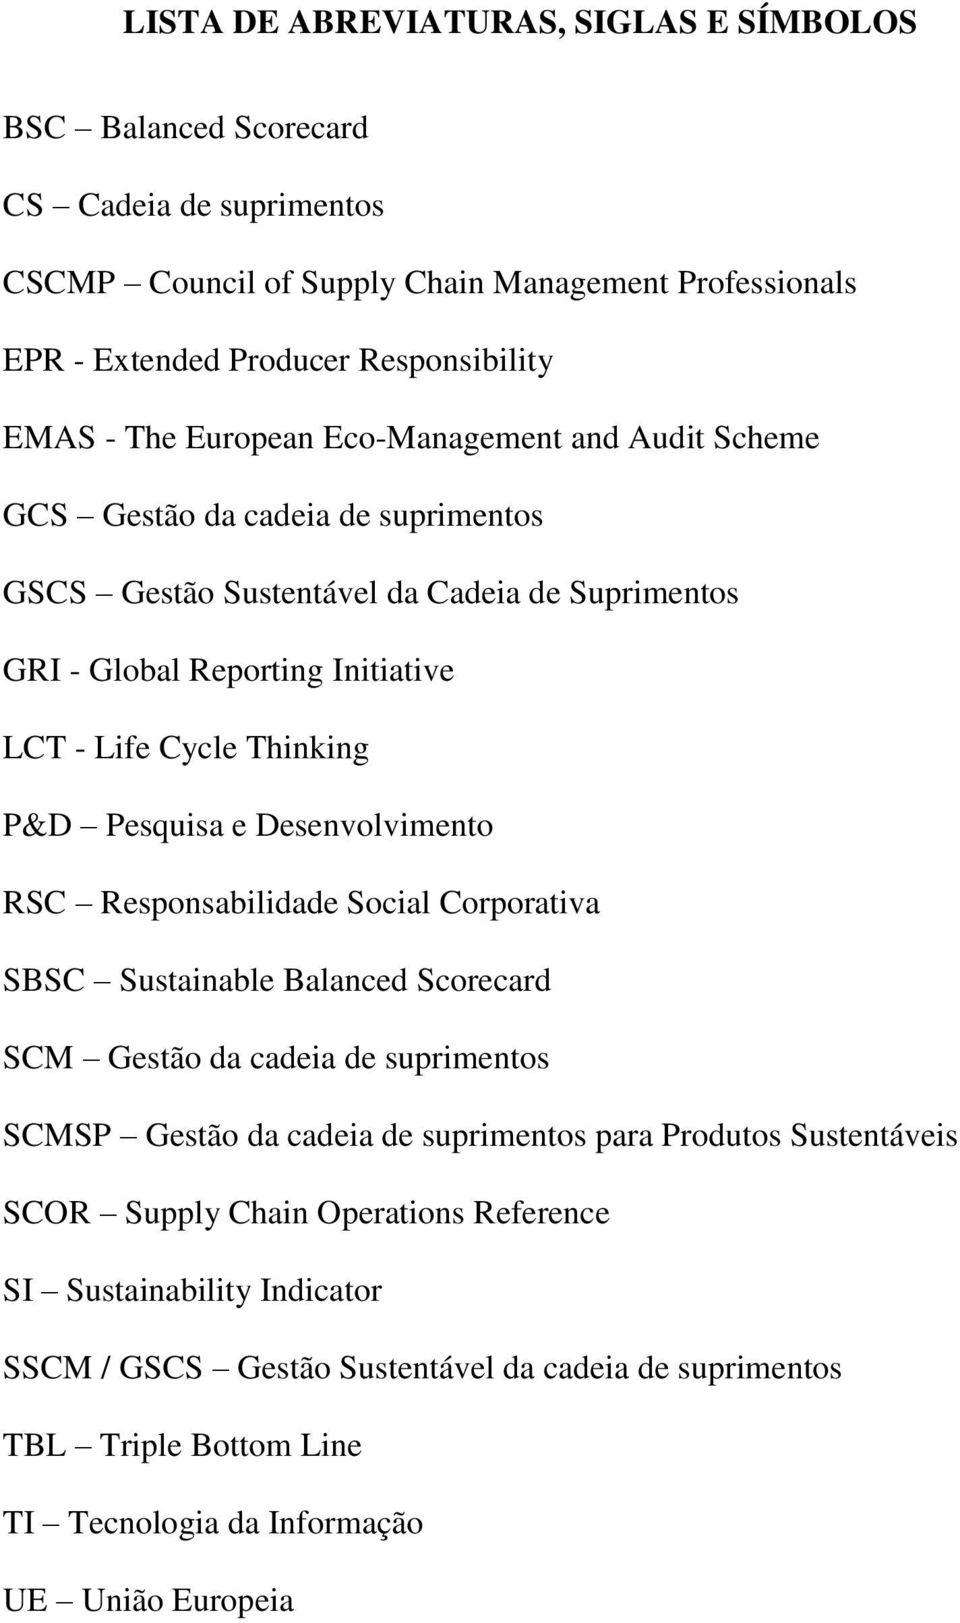 Pesquisa e Desenvolvimento RSC Responsabilidade Social Corporativa SBSC Sustainable Balanced Scorecard SCM Gestão da cadeia de suprimentos SCMSP Gestão da cadeia de suprimentos para Produtos